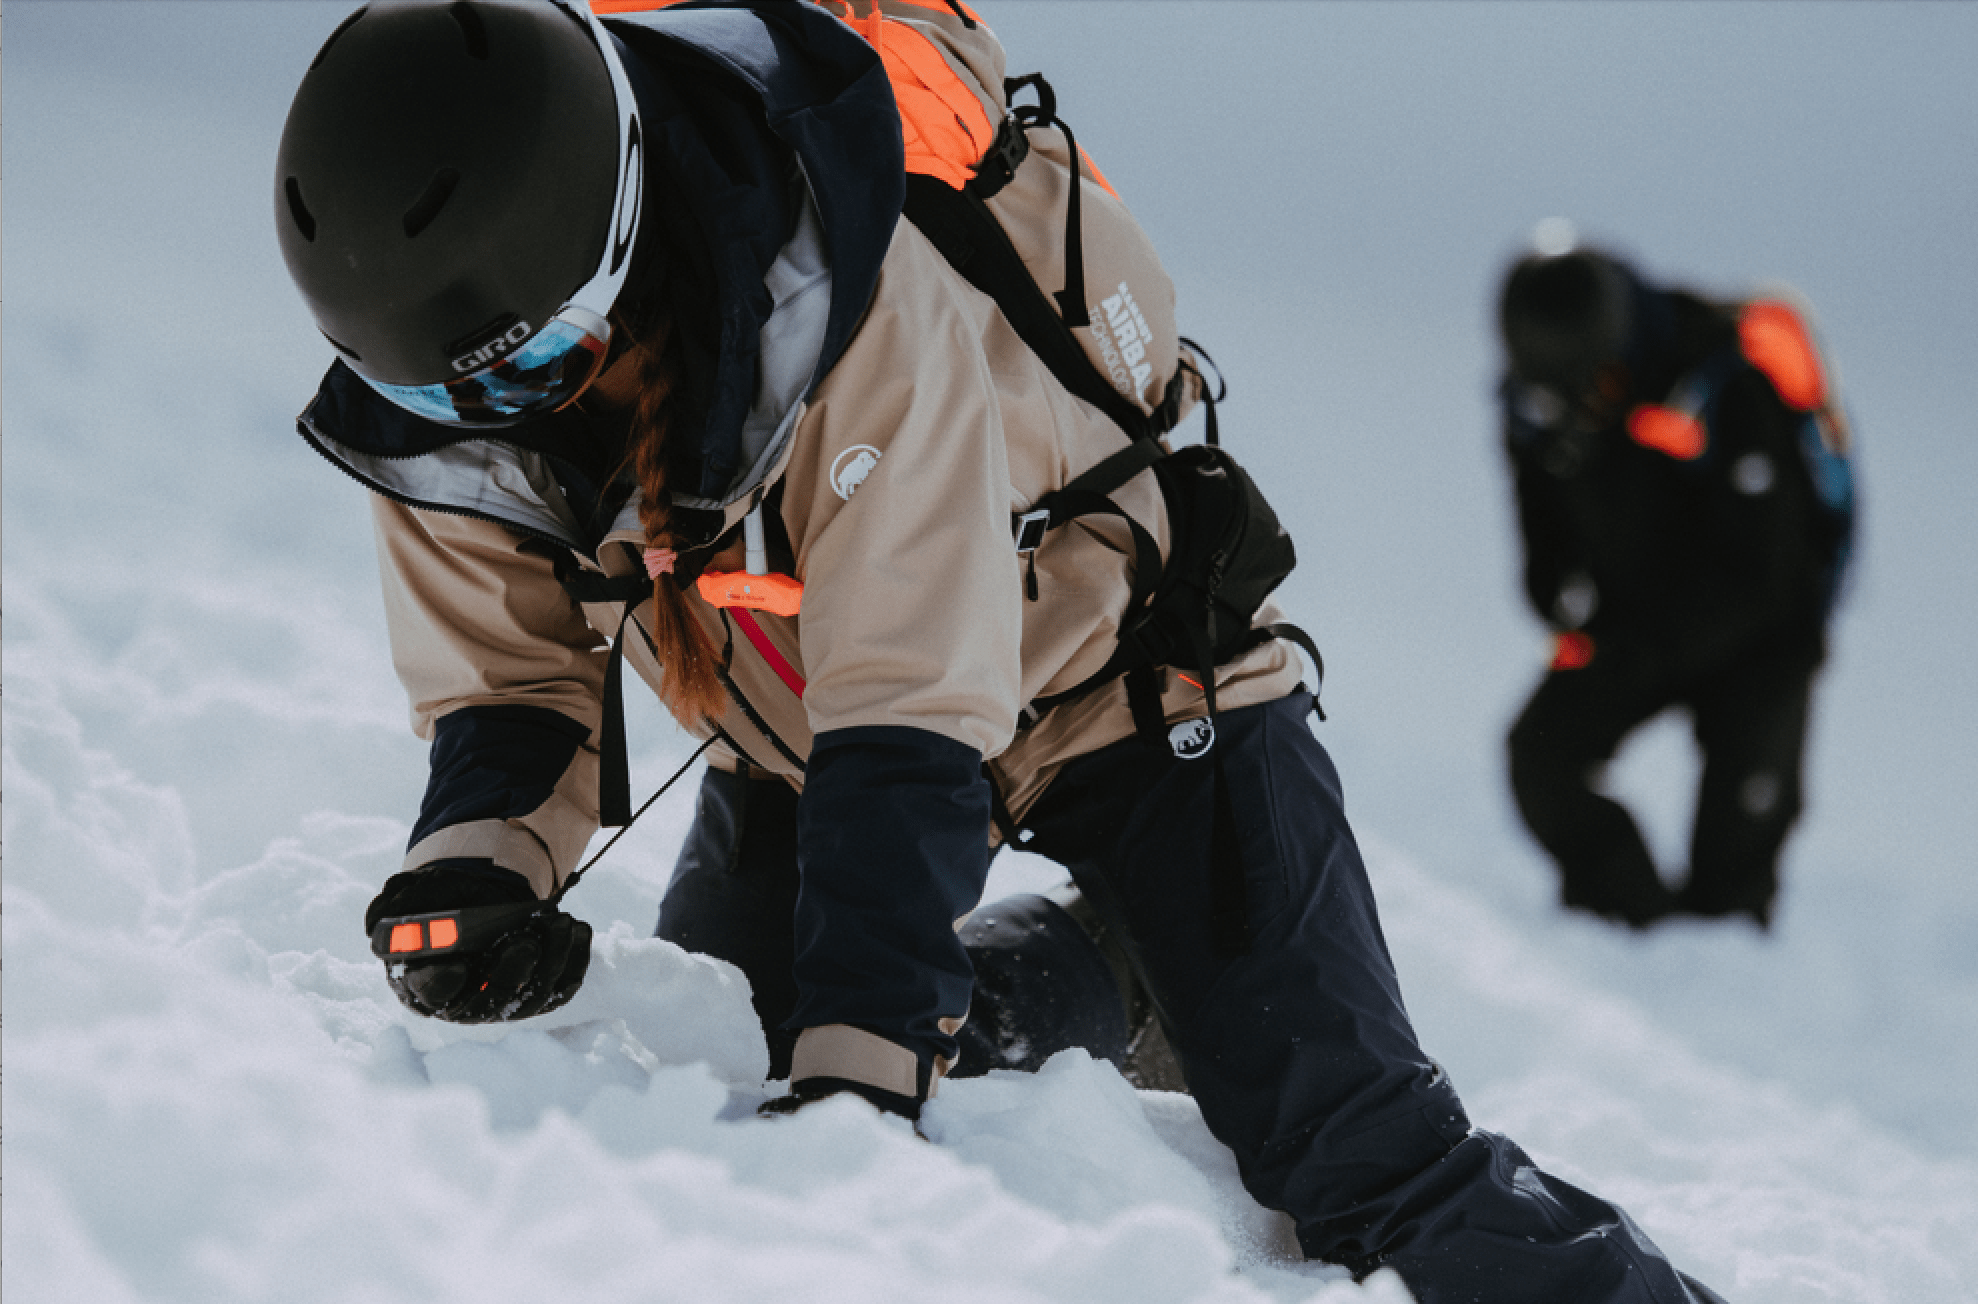 Spyder Wengen Ski Wear & Accessories